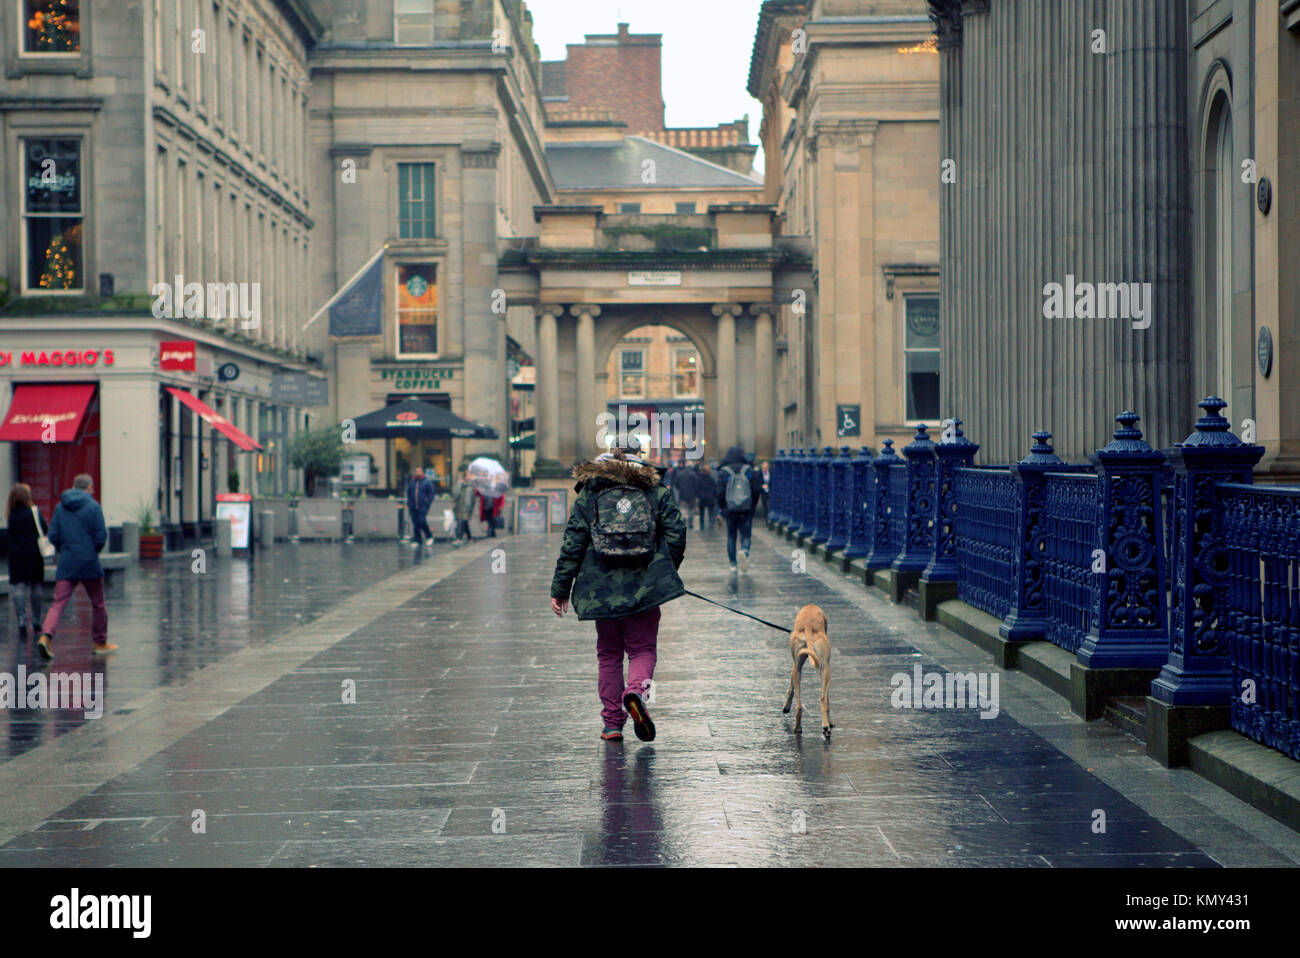 Funny man walking cane sulla strada bagnata royal exchange square glasgow visto da dietro in prospettiva Foto Stock